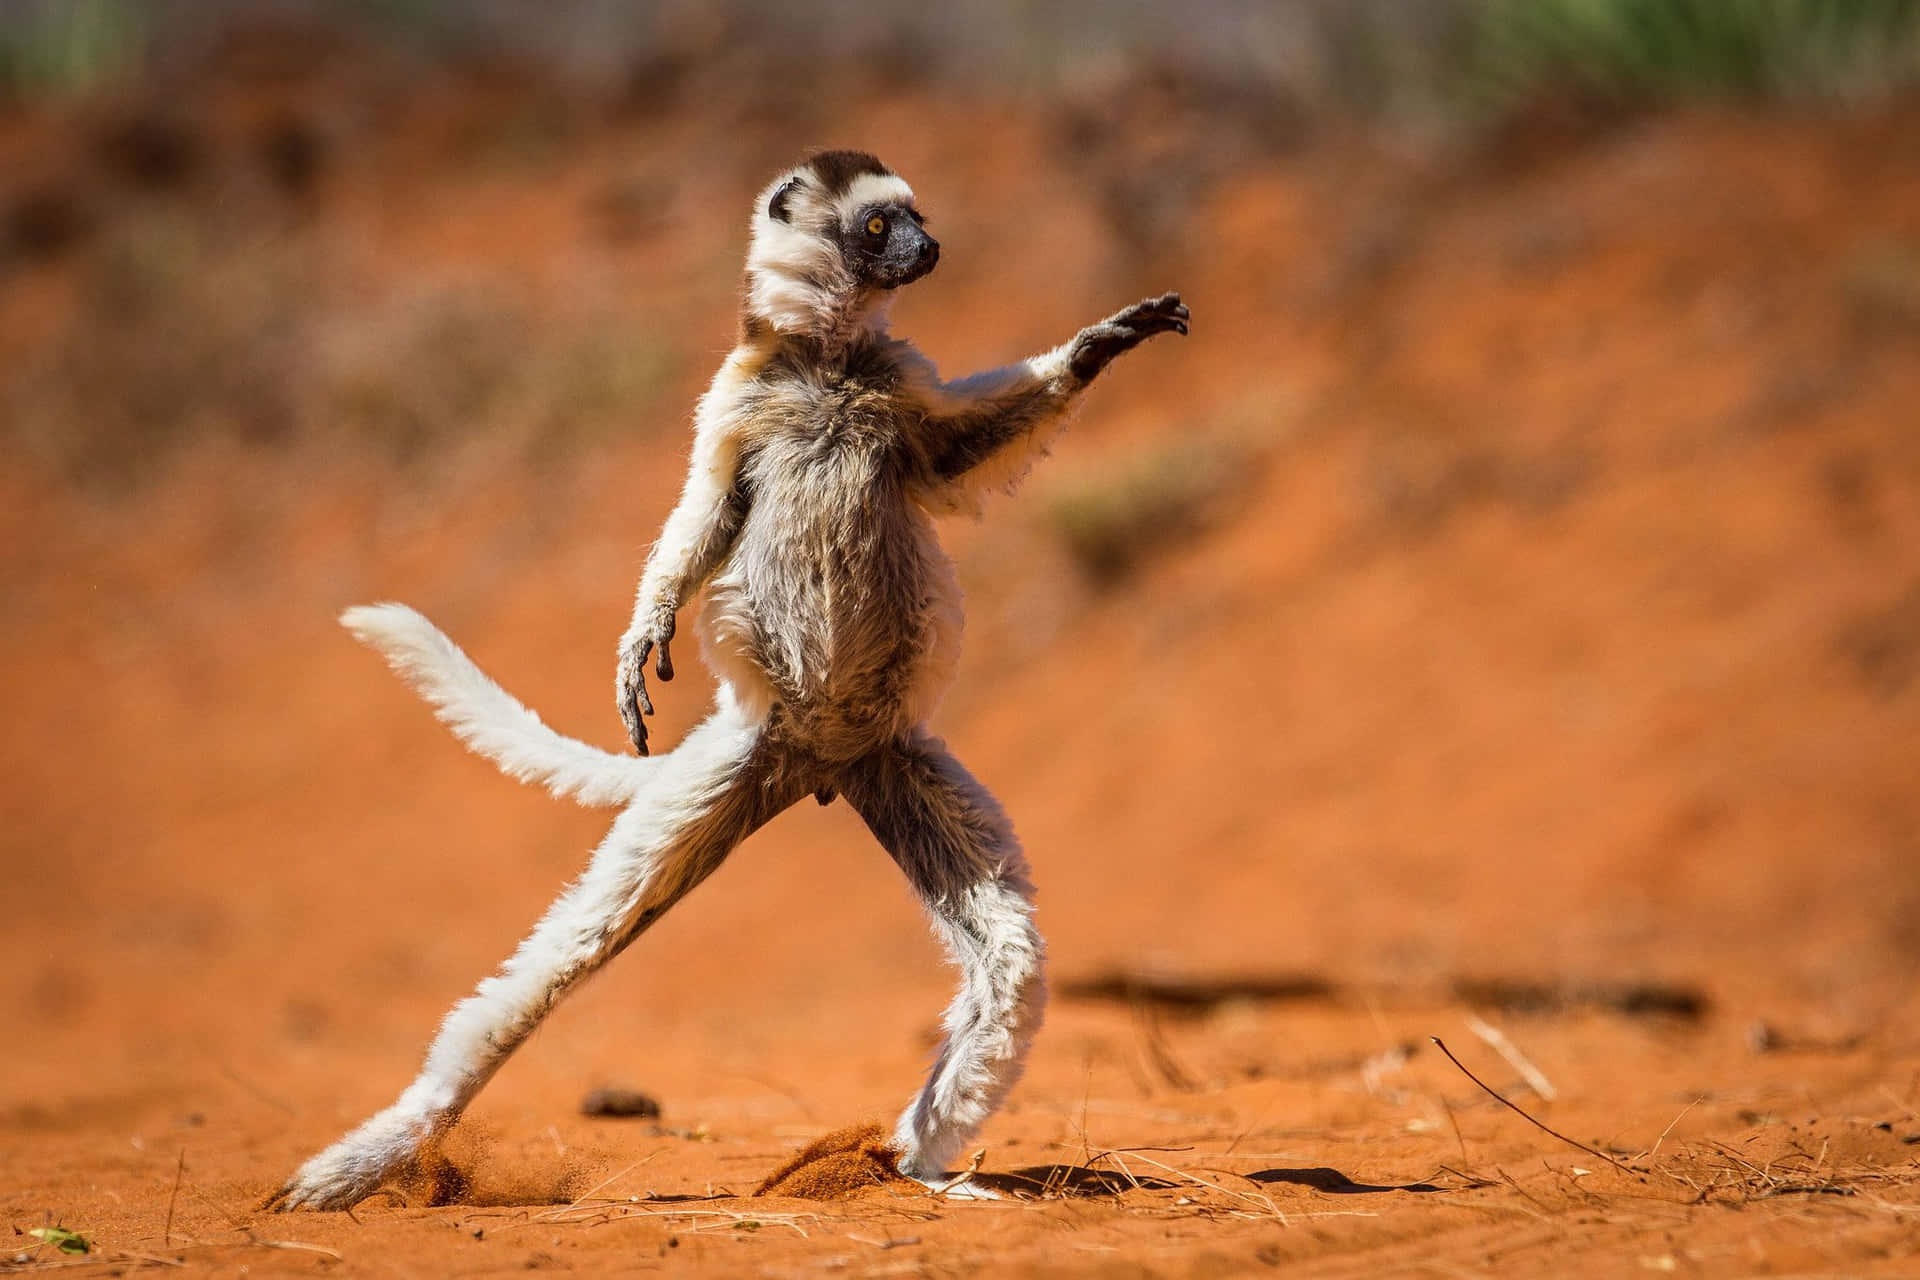 Funny Animal Dancing Meerkat At Savannah Pictures